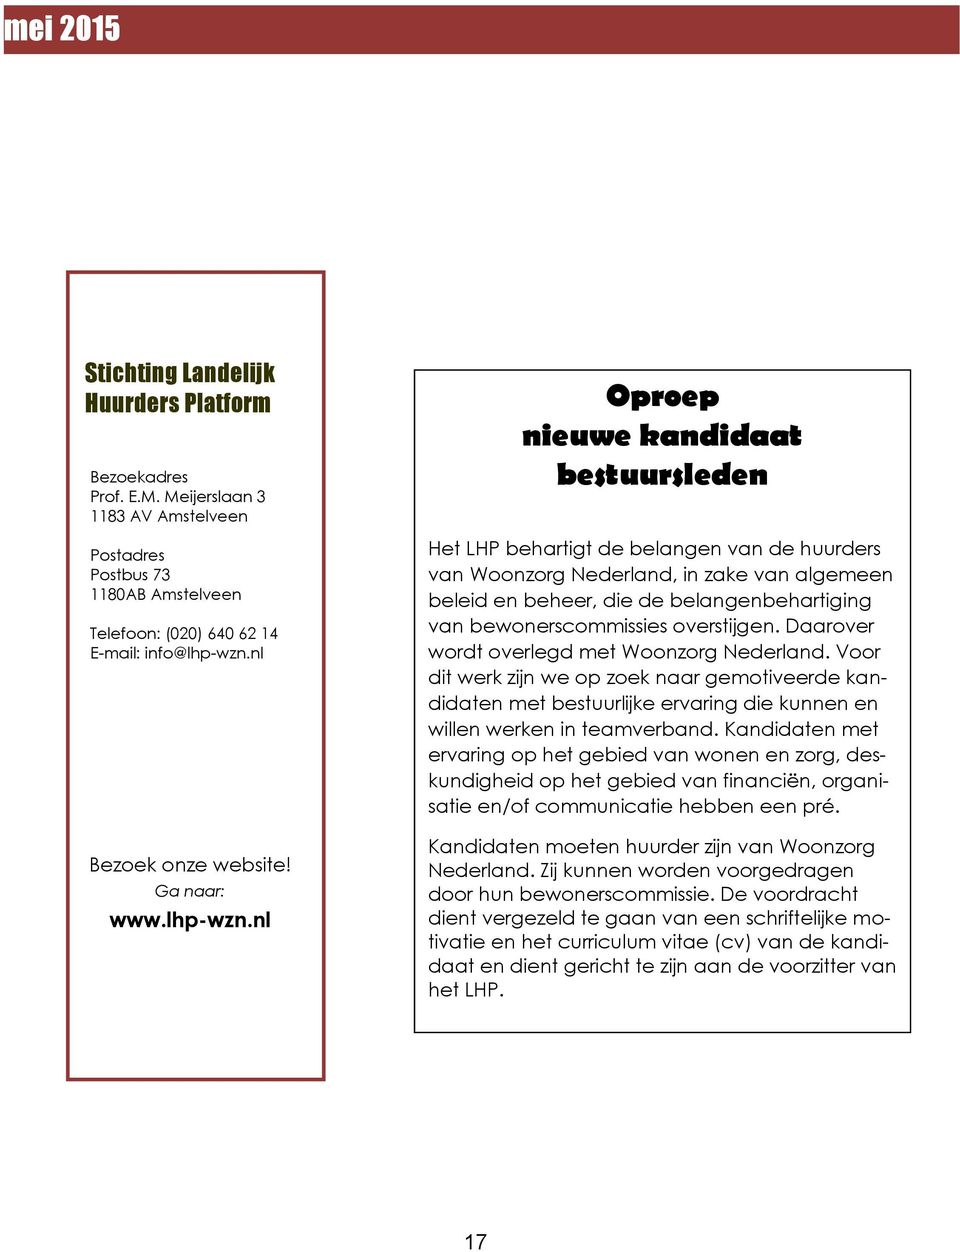 nl Oproep nieuwe kandidaat bestuursleden Het LHP behartigt de belangen van de huurders van Woonzorg Nederland, in zake van algemeen beleid en beheer, die de belangenbehartiging van bewonerscommissies